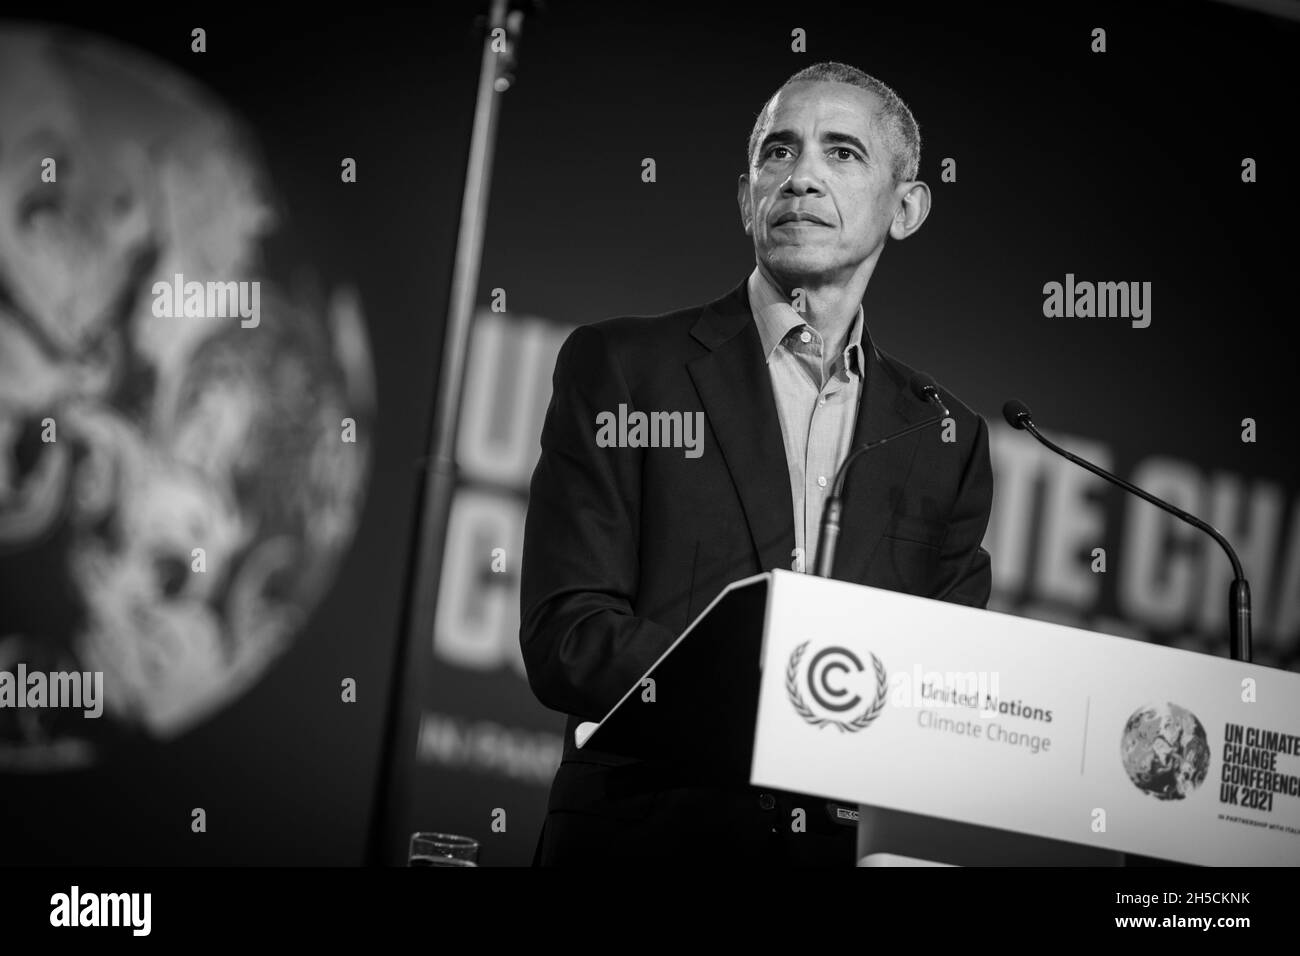 Glasgow, Scozia, Regno Unito. Barack Obama, ex presidente degli Stati Uniti d'America, parla alla 26a Conferenza delle Nazioni Unite sul cambiamento climatico, nota come COP26, a Glasgow, Scozia, Regno Unito, L'8 novembre 2021. Foto:Jeremy Sutton-Hibbert/Alamy Live News. Foto Stock